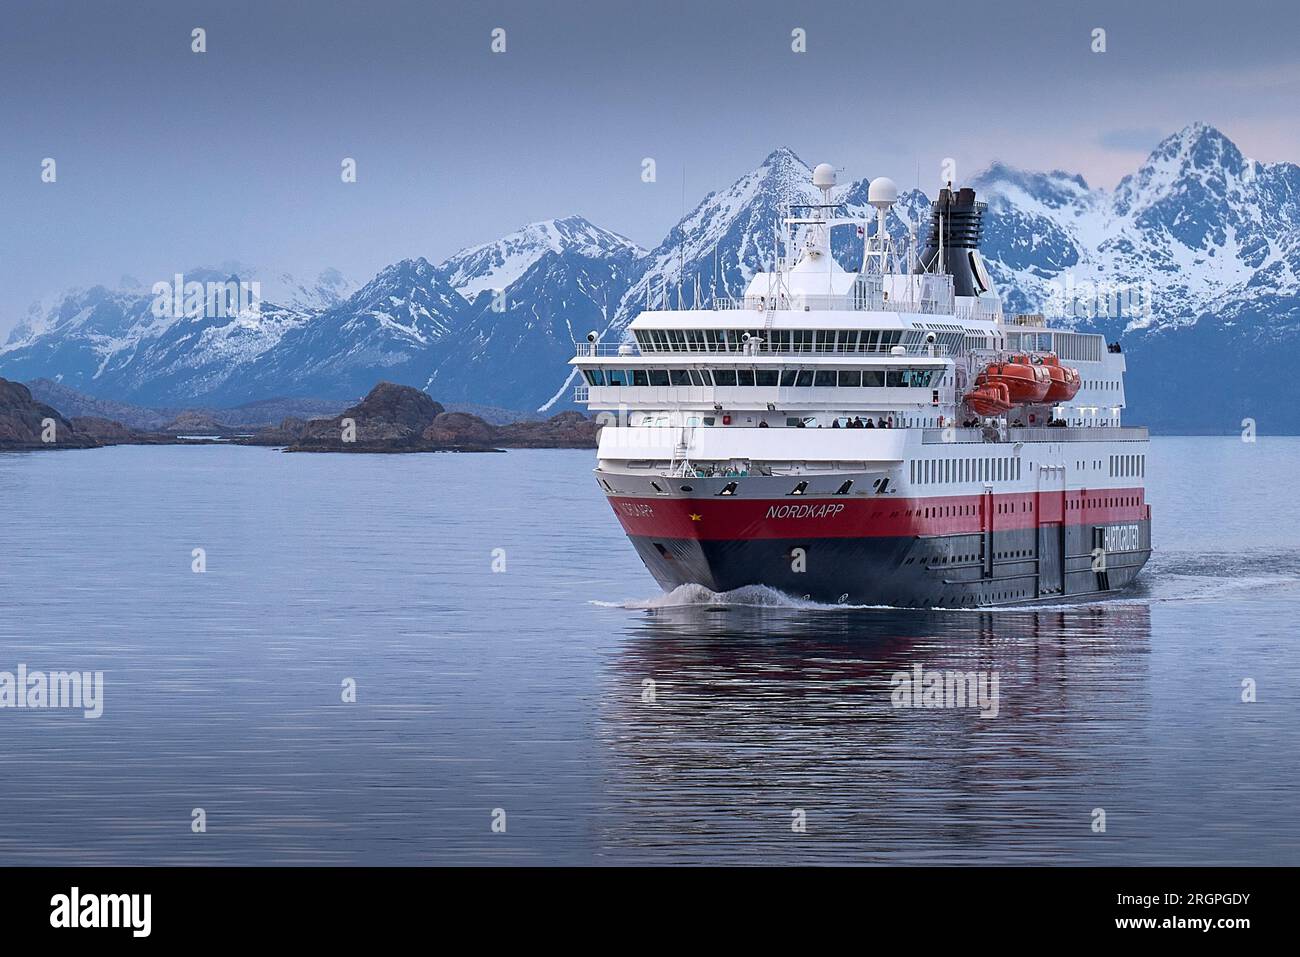 Le Norwegian Hurtigruten Ferry, MS NORDKAPP, navigue au sud de Svolvaer, les montagnes enneigées des îles Lofoten derrière. Norvège. 4 mai 2023 Banque D'Images